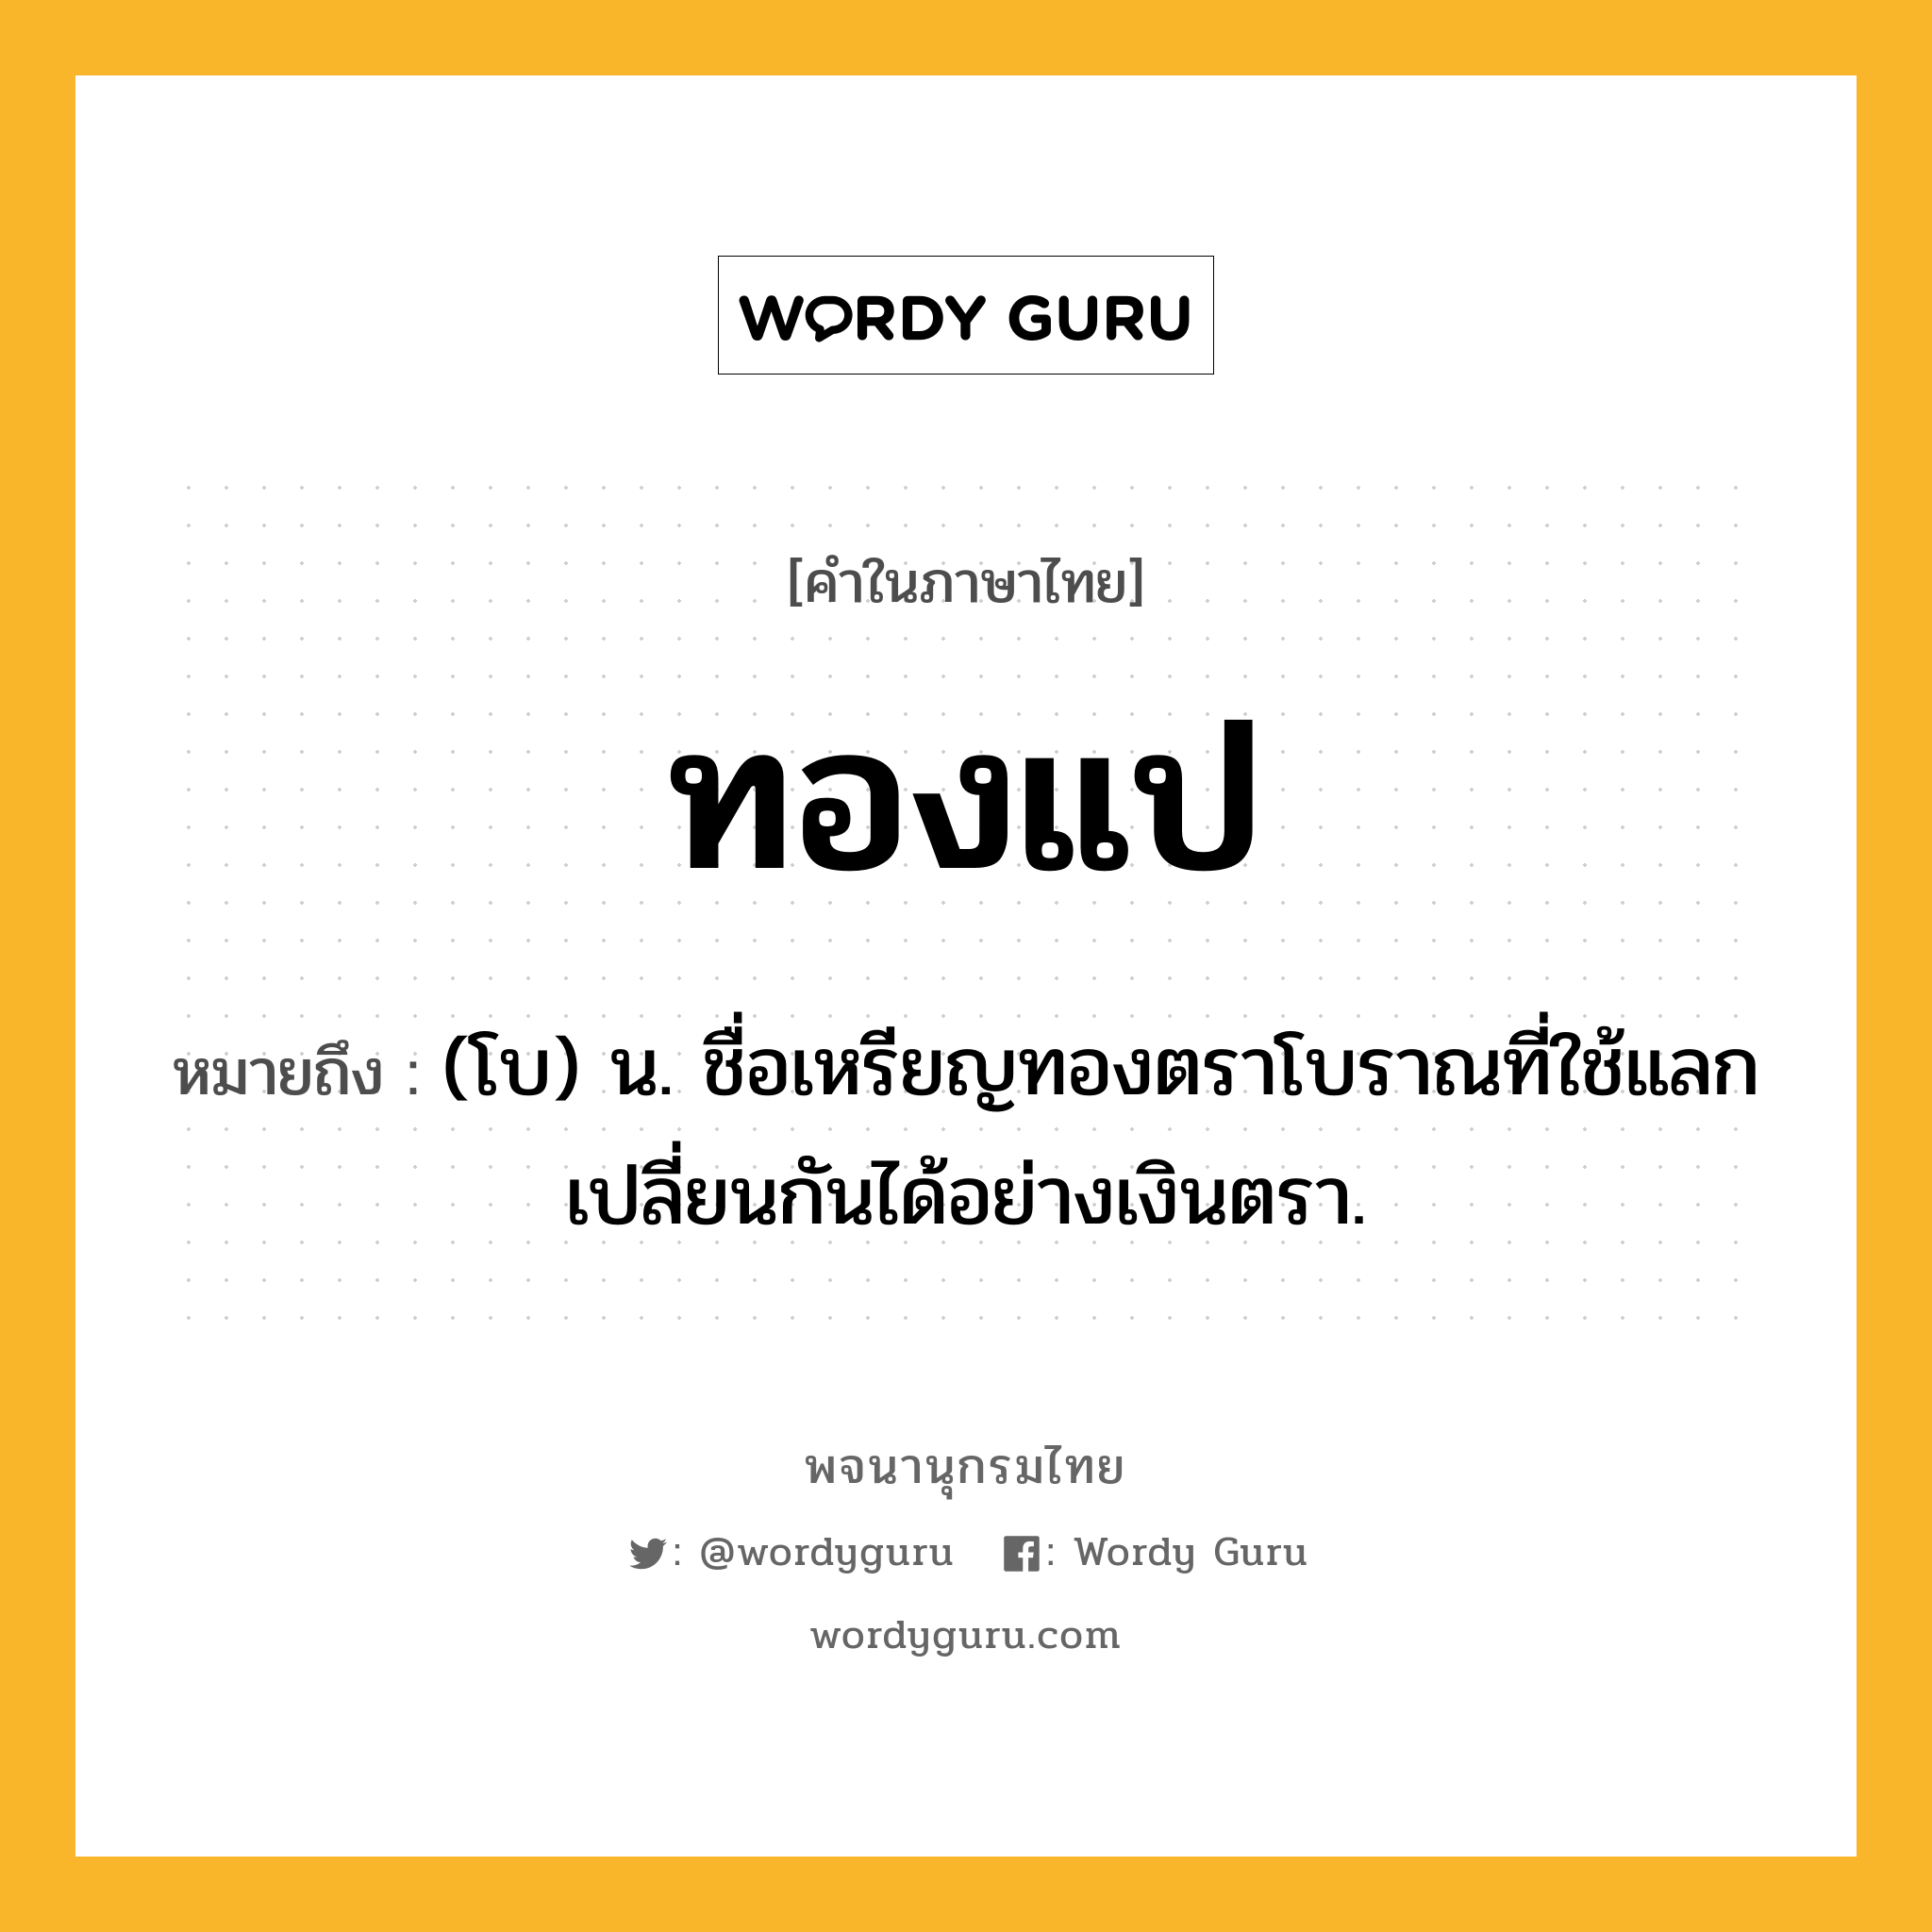 ทองแป ความหมาย หมายถึงอะไร?, คำในภาษาไทย ทองแป หมายถึง (โบ) น. ชื่อเหรียญทองตราโบราณที่ใช้แลกเปลี่ยนกันได้อย่างเงินตรา.